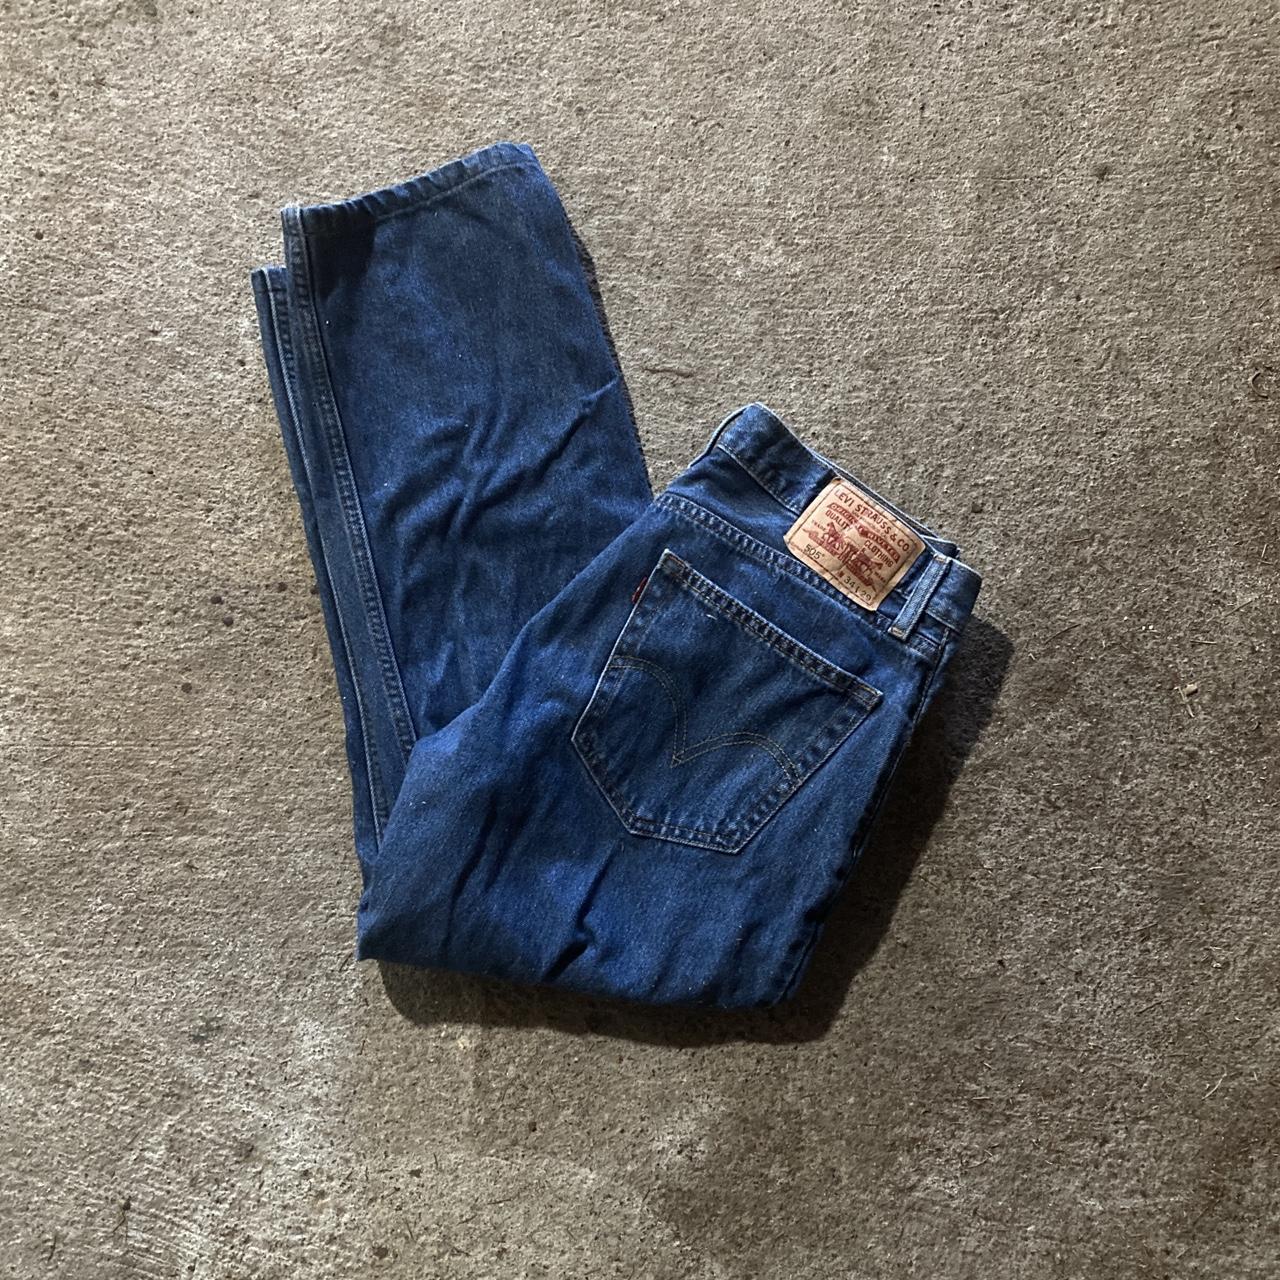 Levi 505 jeans W 34 L 29 #levis #jeans #bluejeans... - Depop